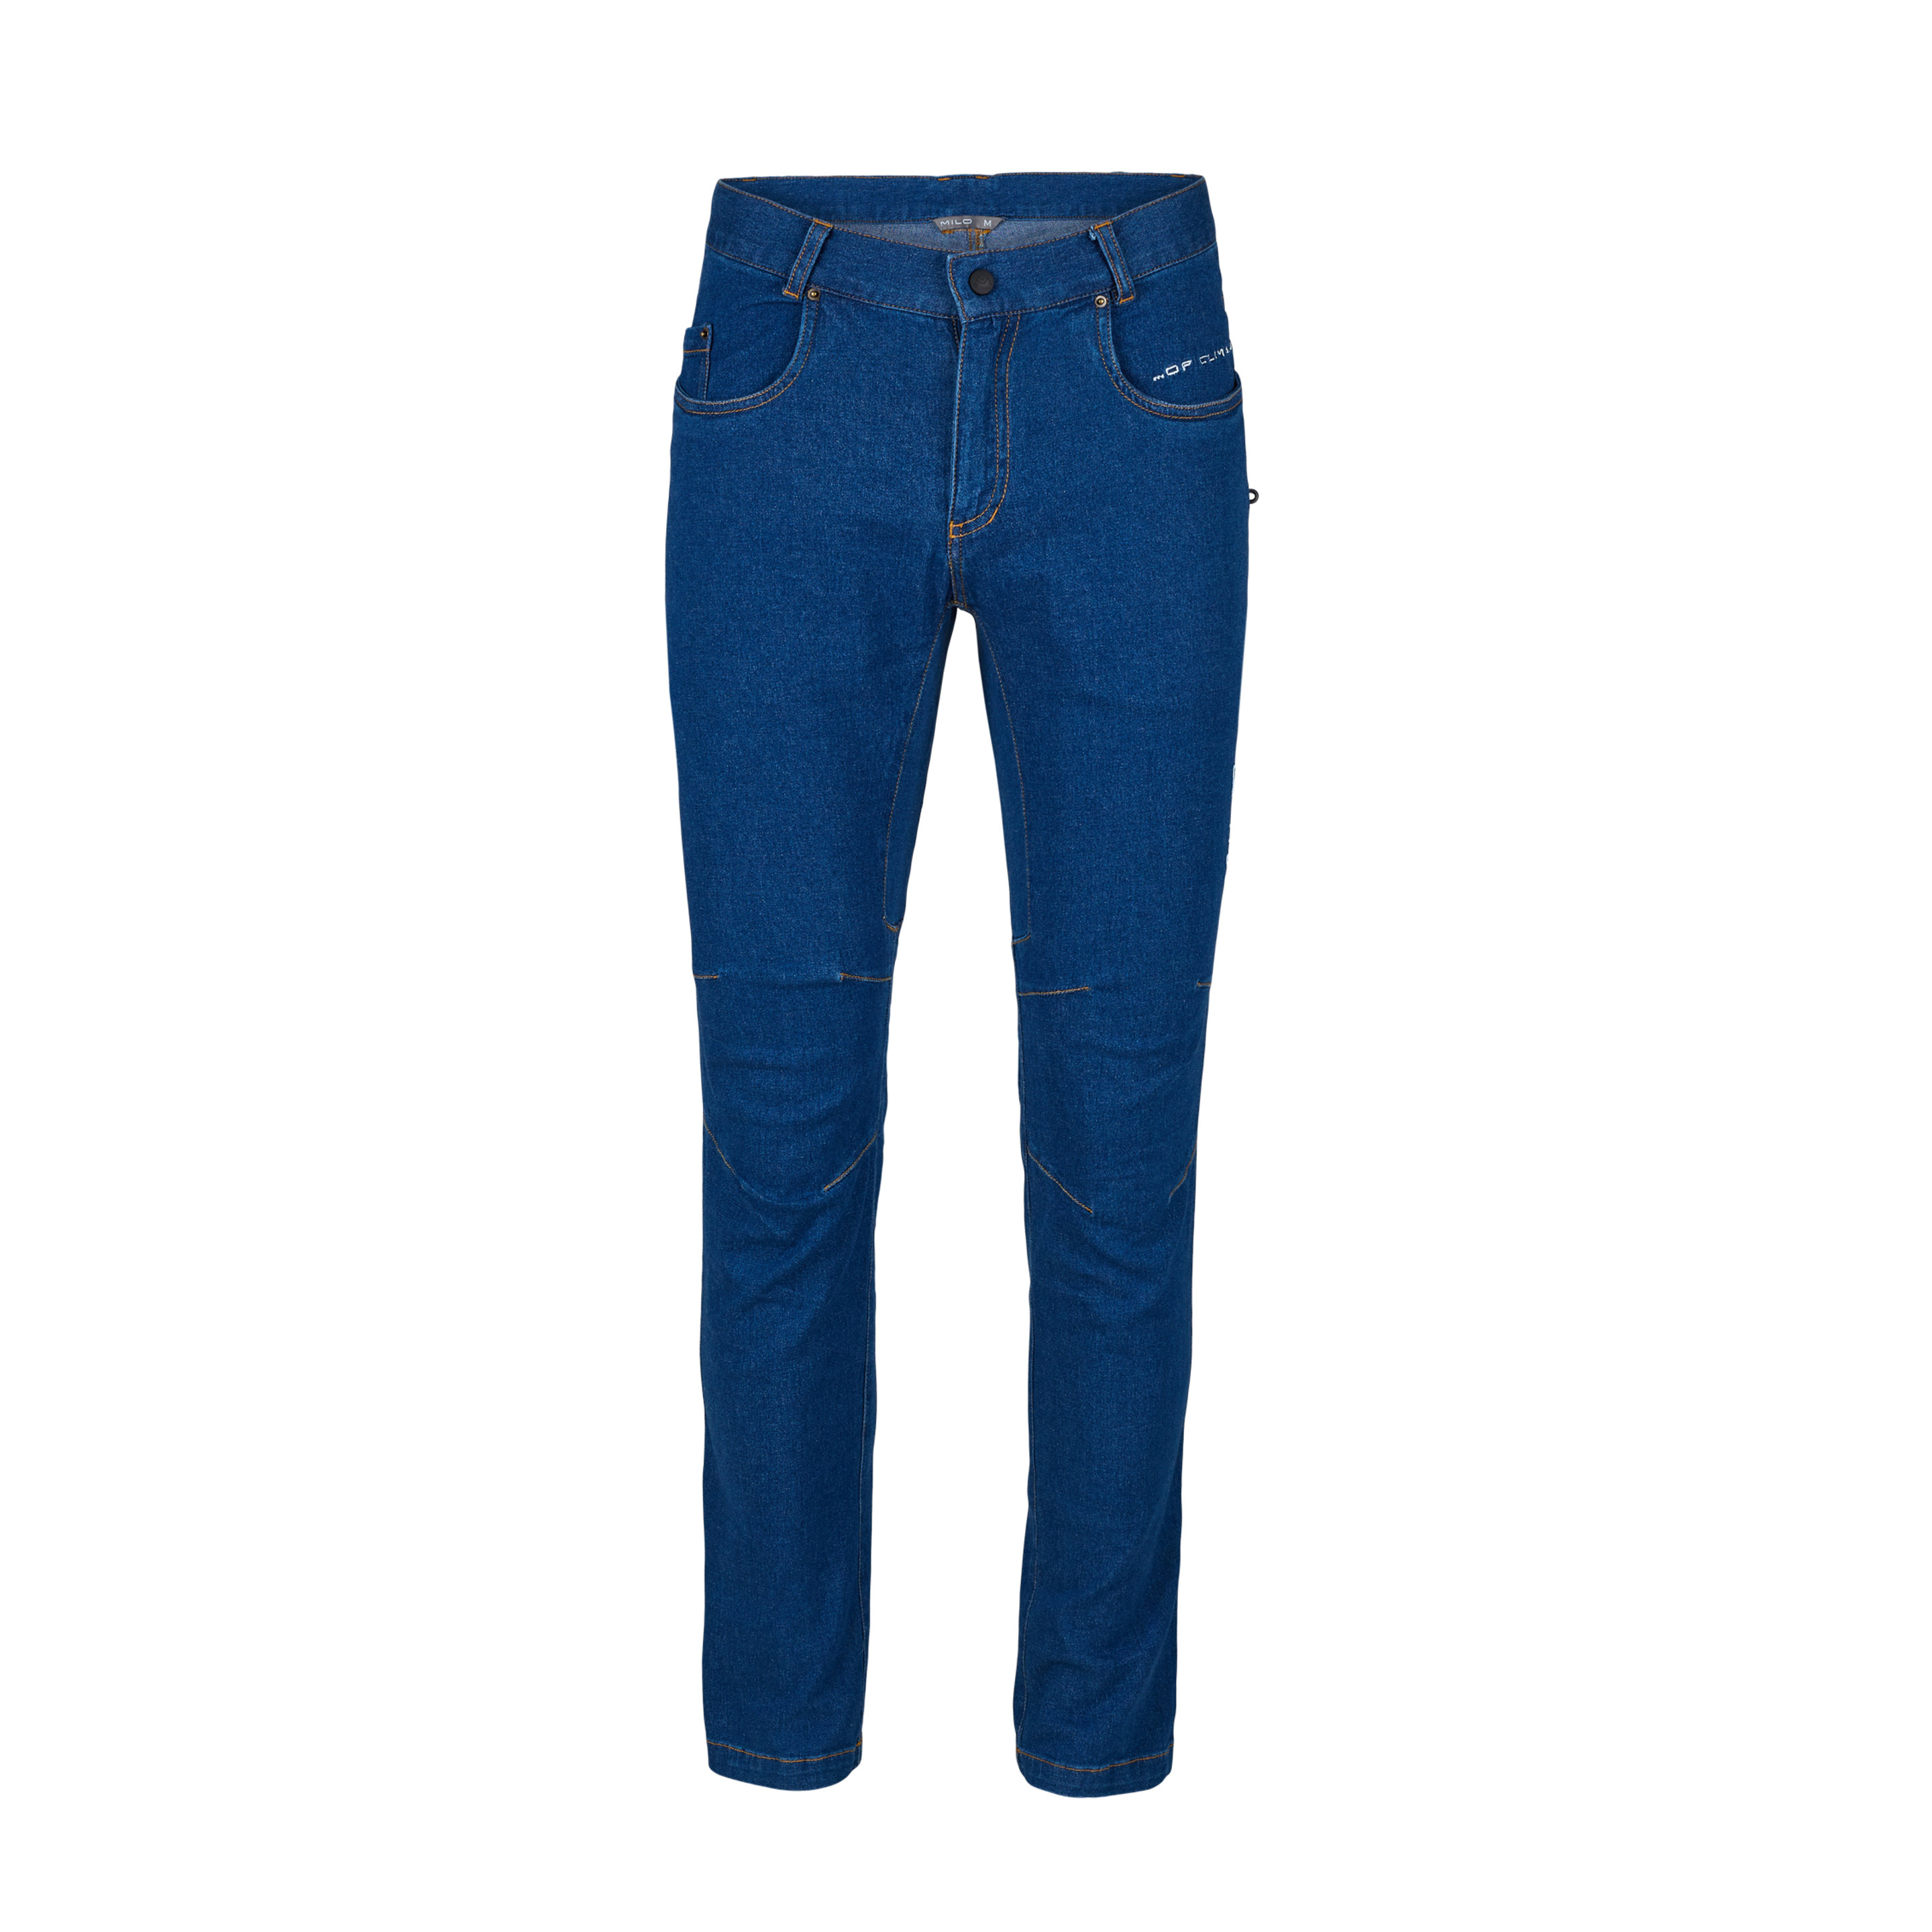 Pantalón Escalada Milo Thong Jeans - azul-denim - 